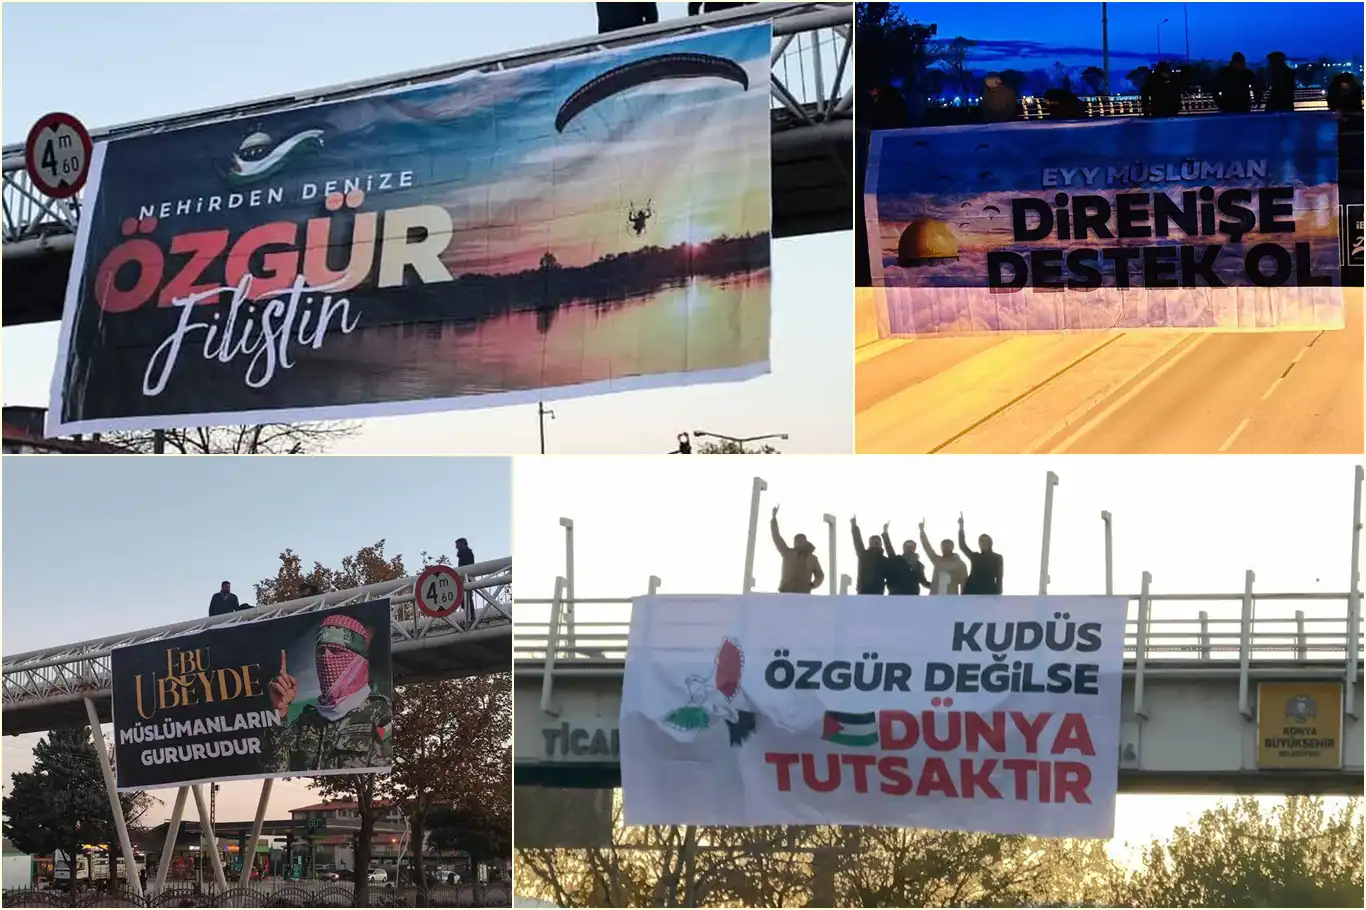 Konya'dan Filistin direnişine destek